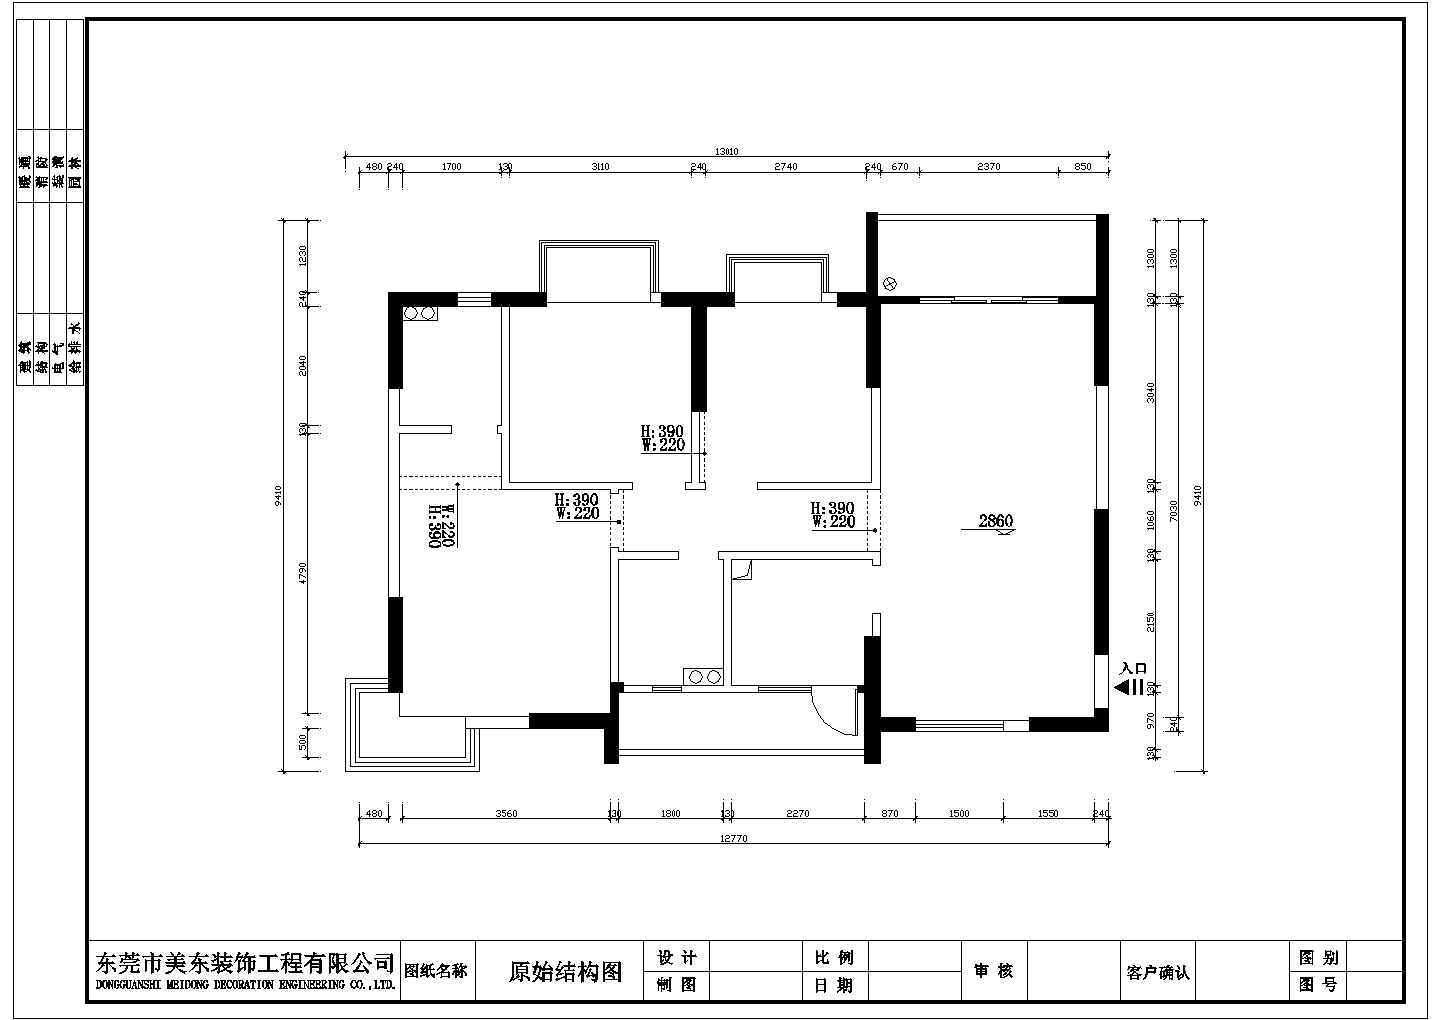 【东莞市】鼎盛中环豪华别墅装修设计施工图纸